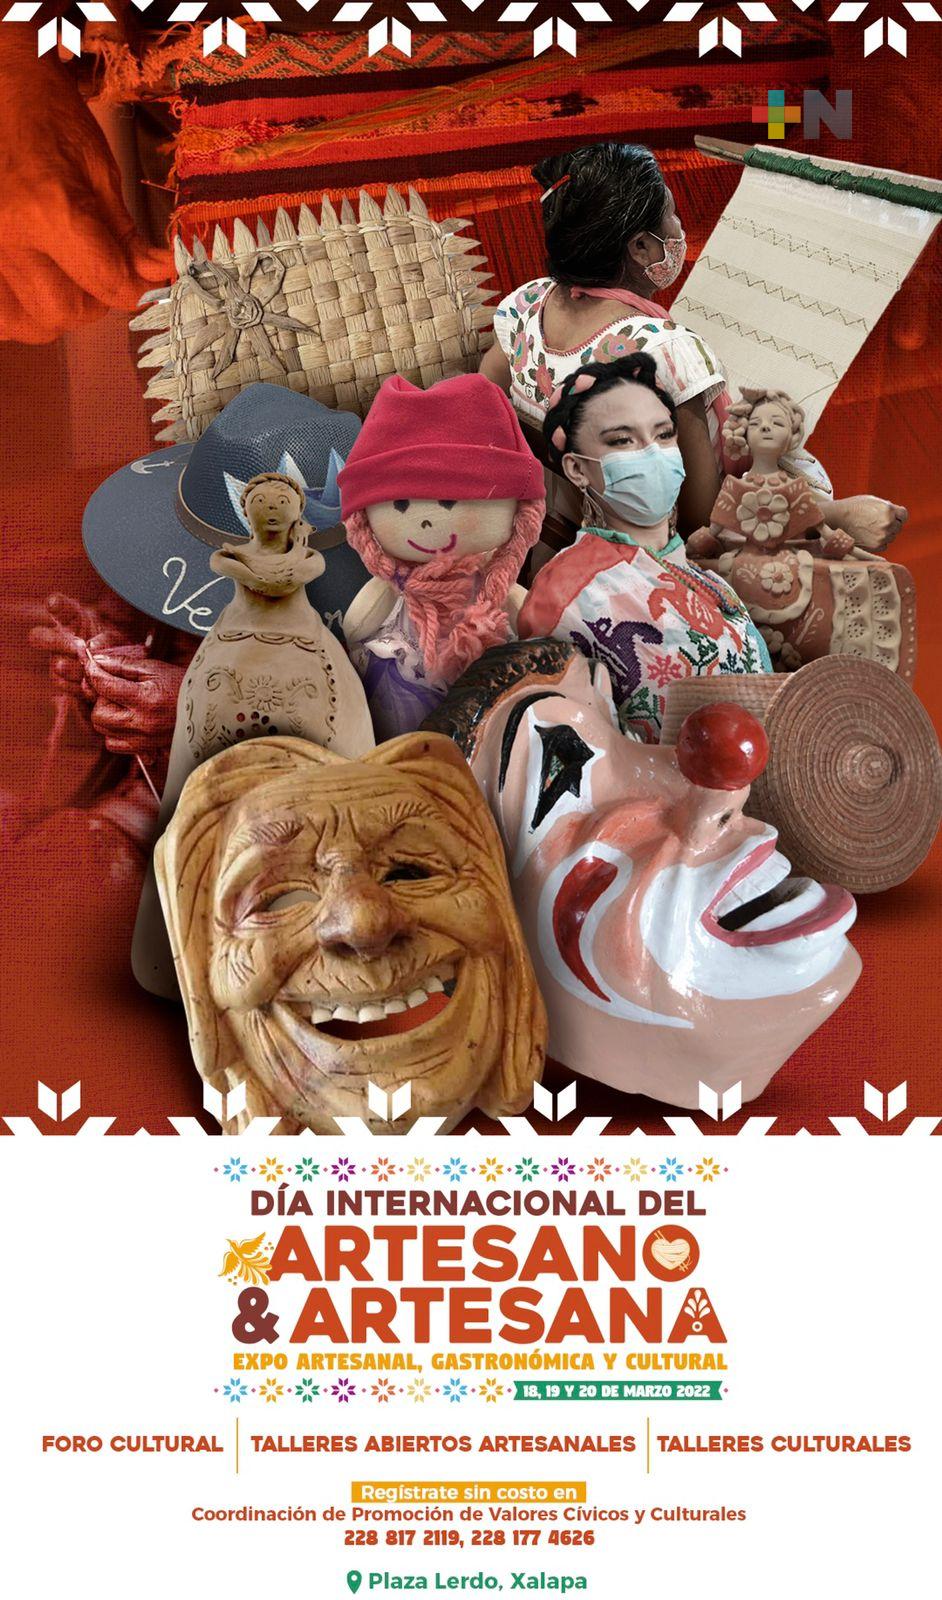 Celebrará Xalapa Día Internacional del Artesano y Artesana el 18,19 y 20 de marzo